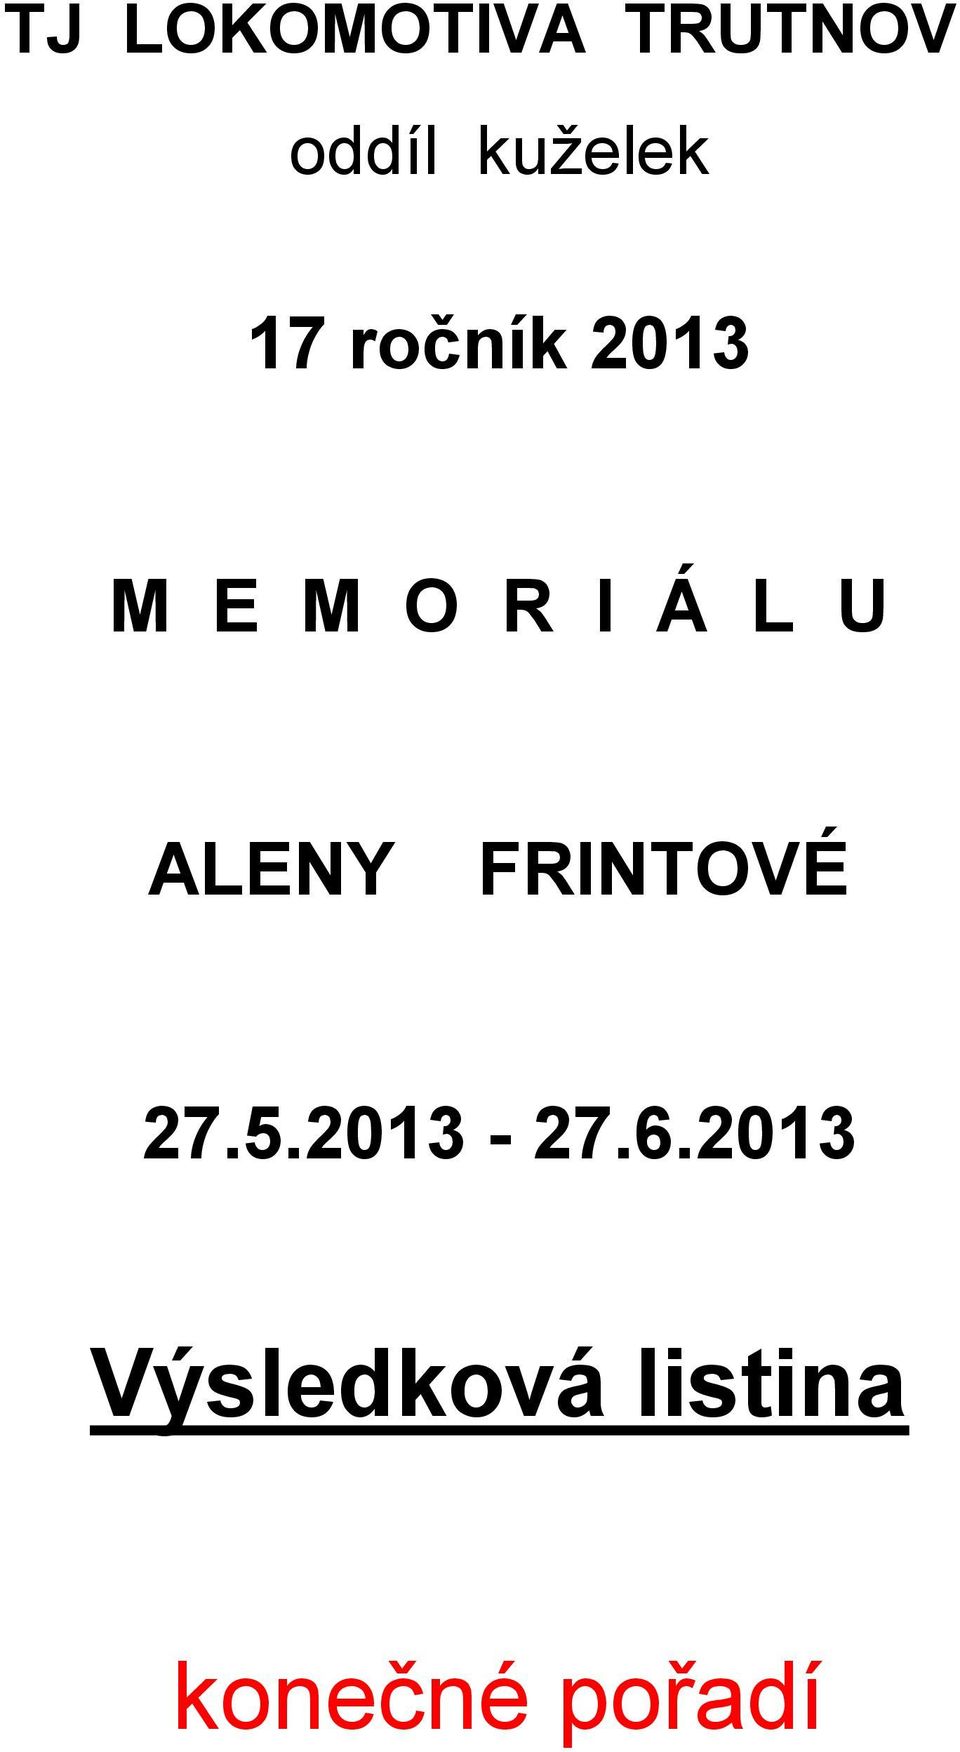 Á L U ALENY FRINTOVÉ 27.5.201-27.